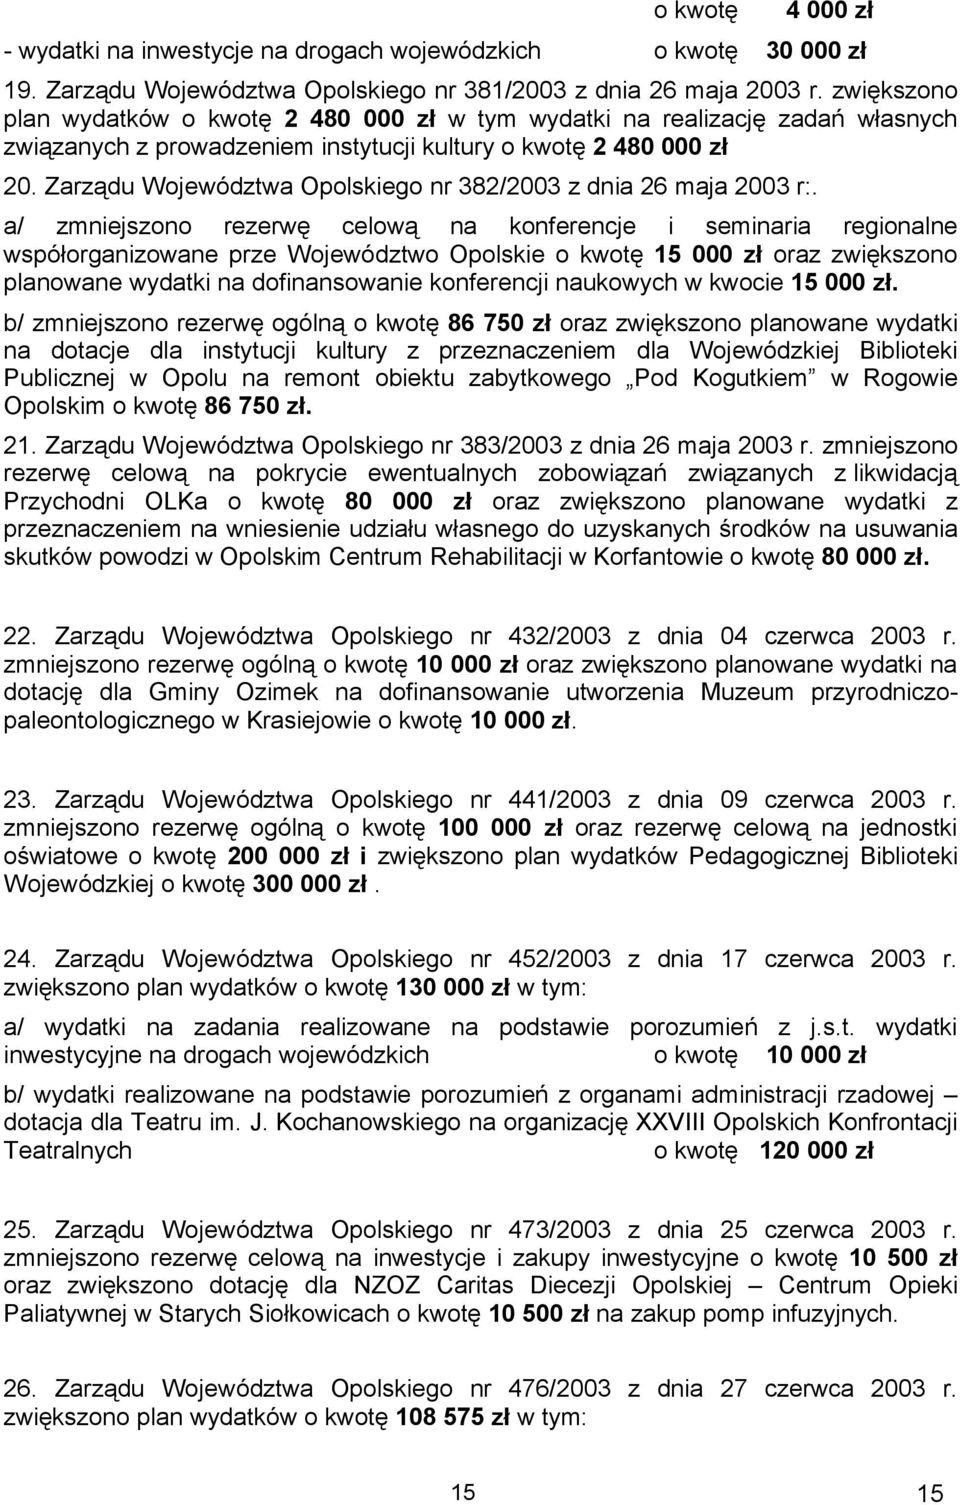 Zarządu Województwa Opolskiego nr 382/2003 z dnia 26 maja 2003 r:.